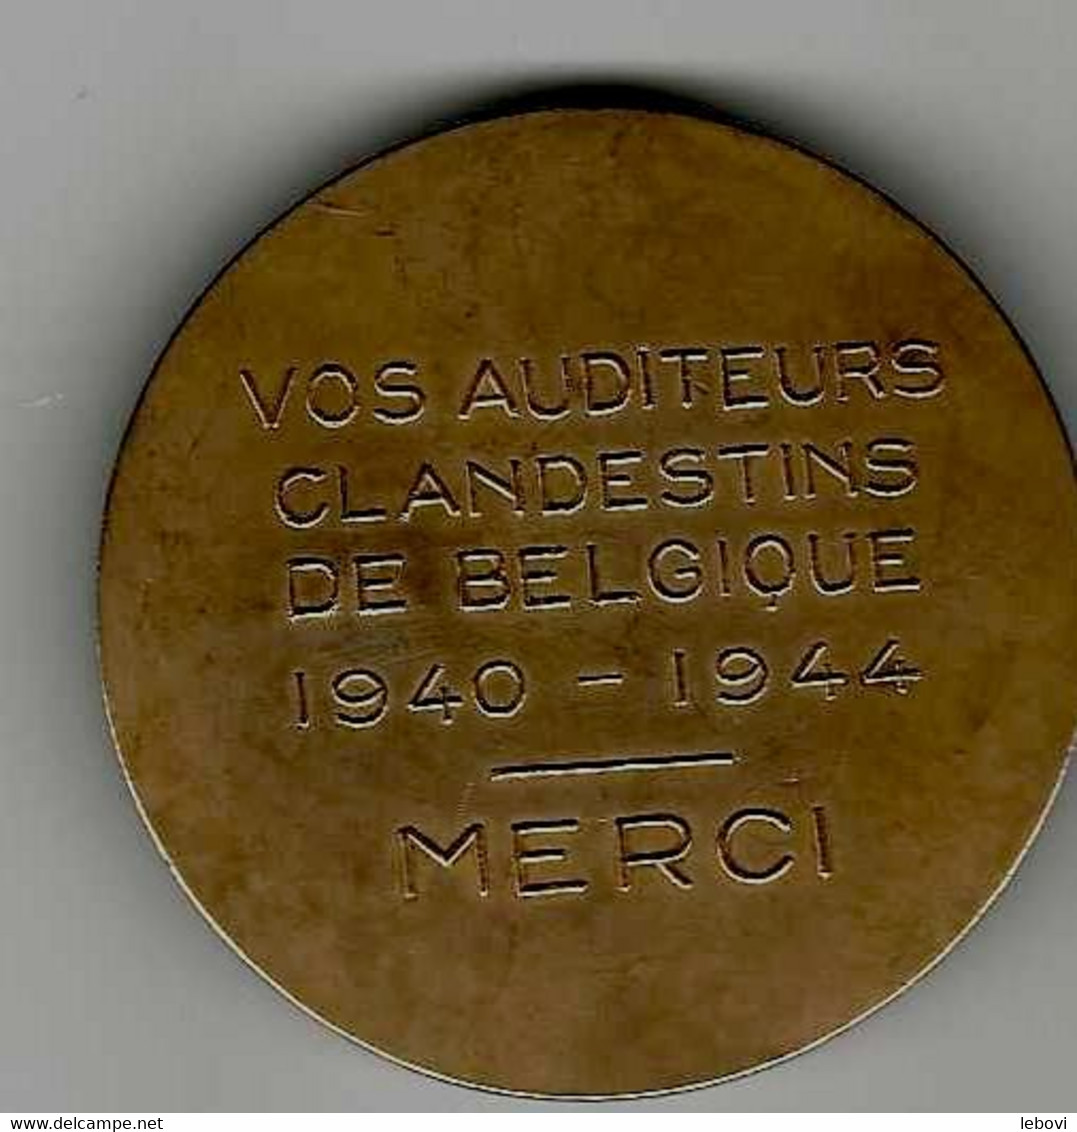 BELGIQUE – AVERS « RENE PAYOT» - REVERS «Vos Auditeurs/clandestins/de Belgique/1940 – 1944/merci » - Professionnels / De Société